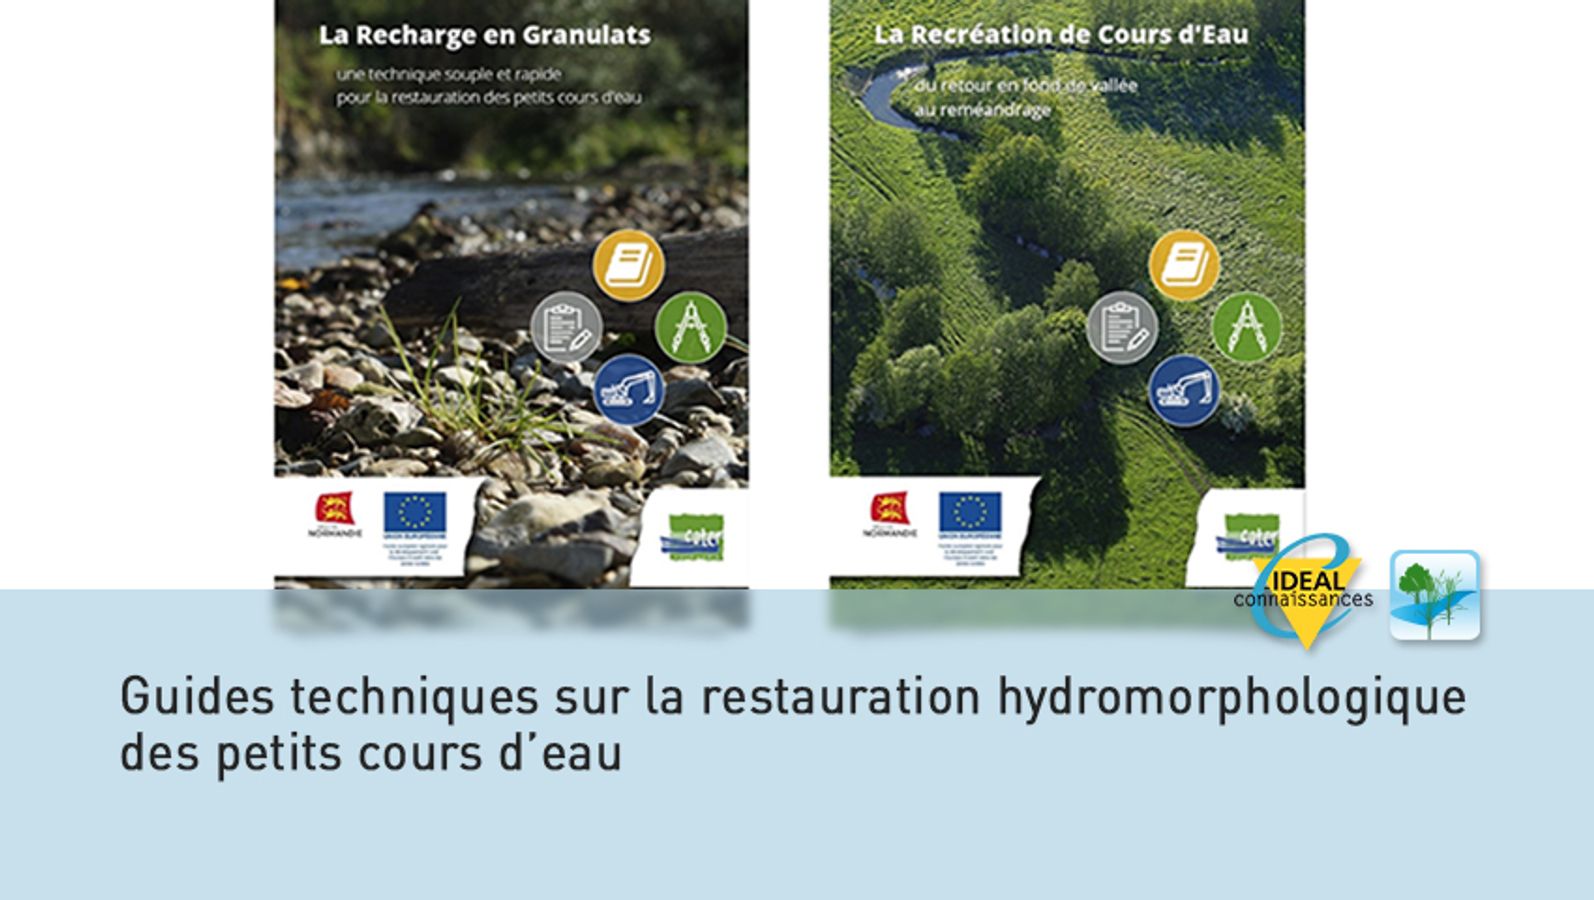 Guides techniques sur la restauration hydromorphologique des petits cours d’eau